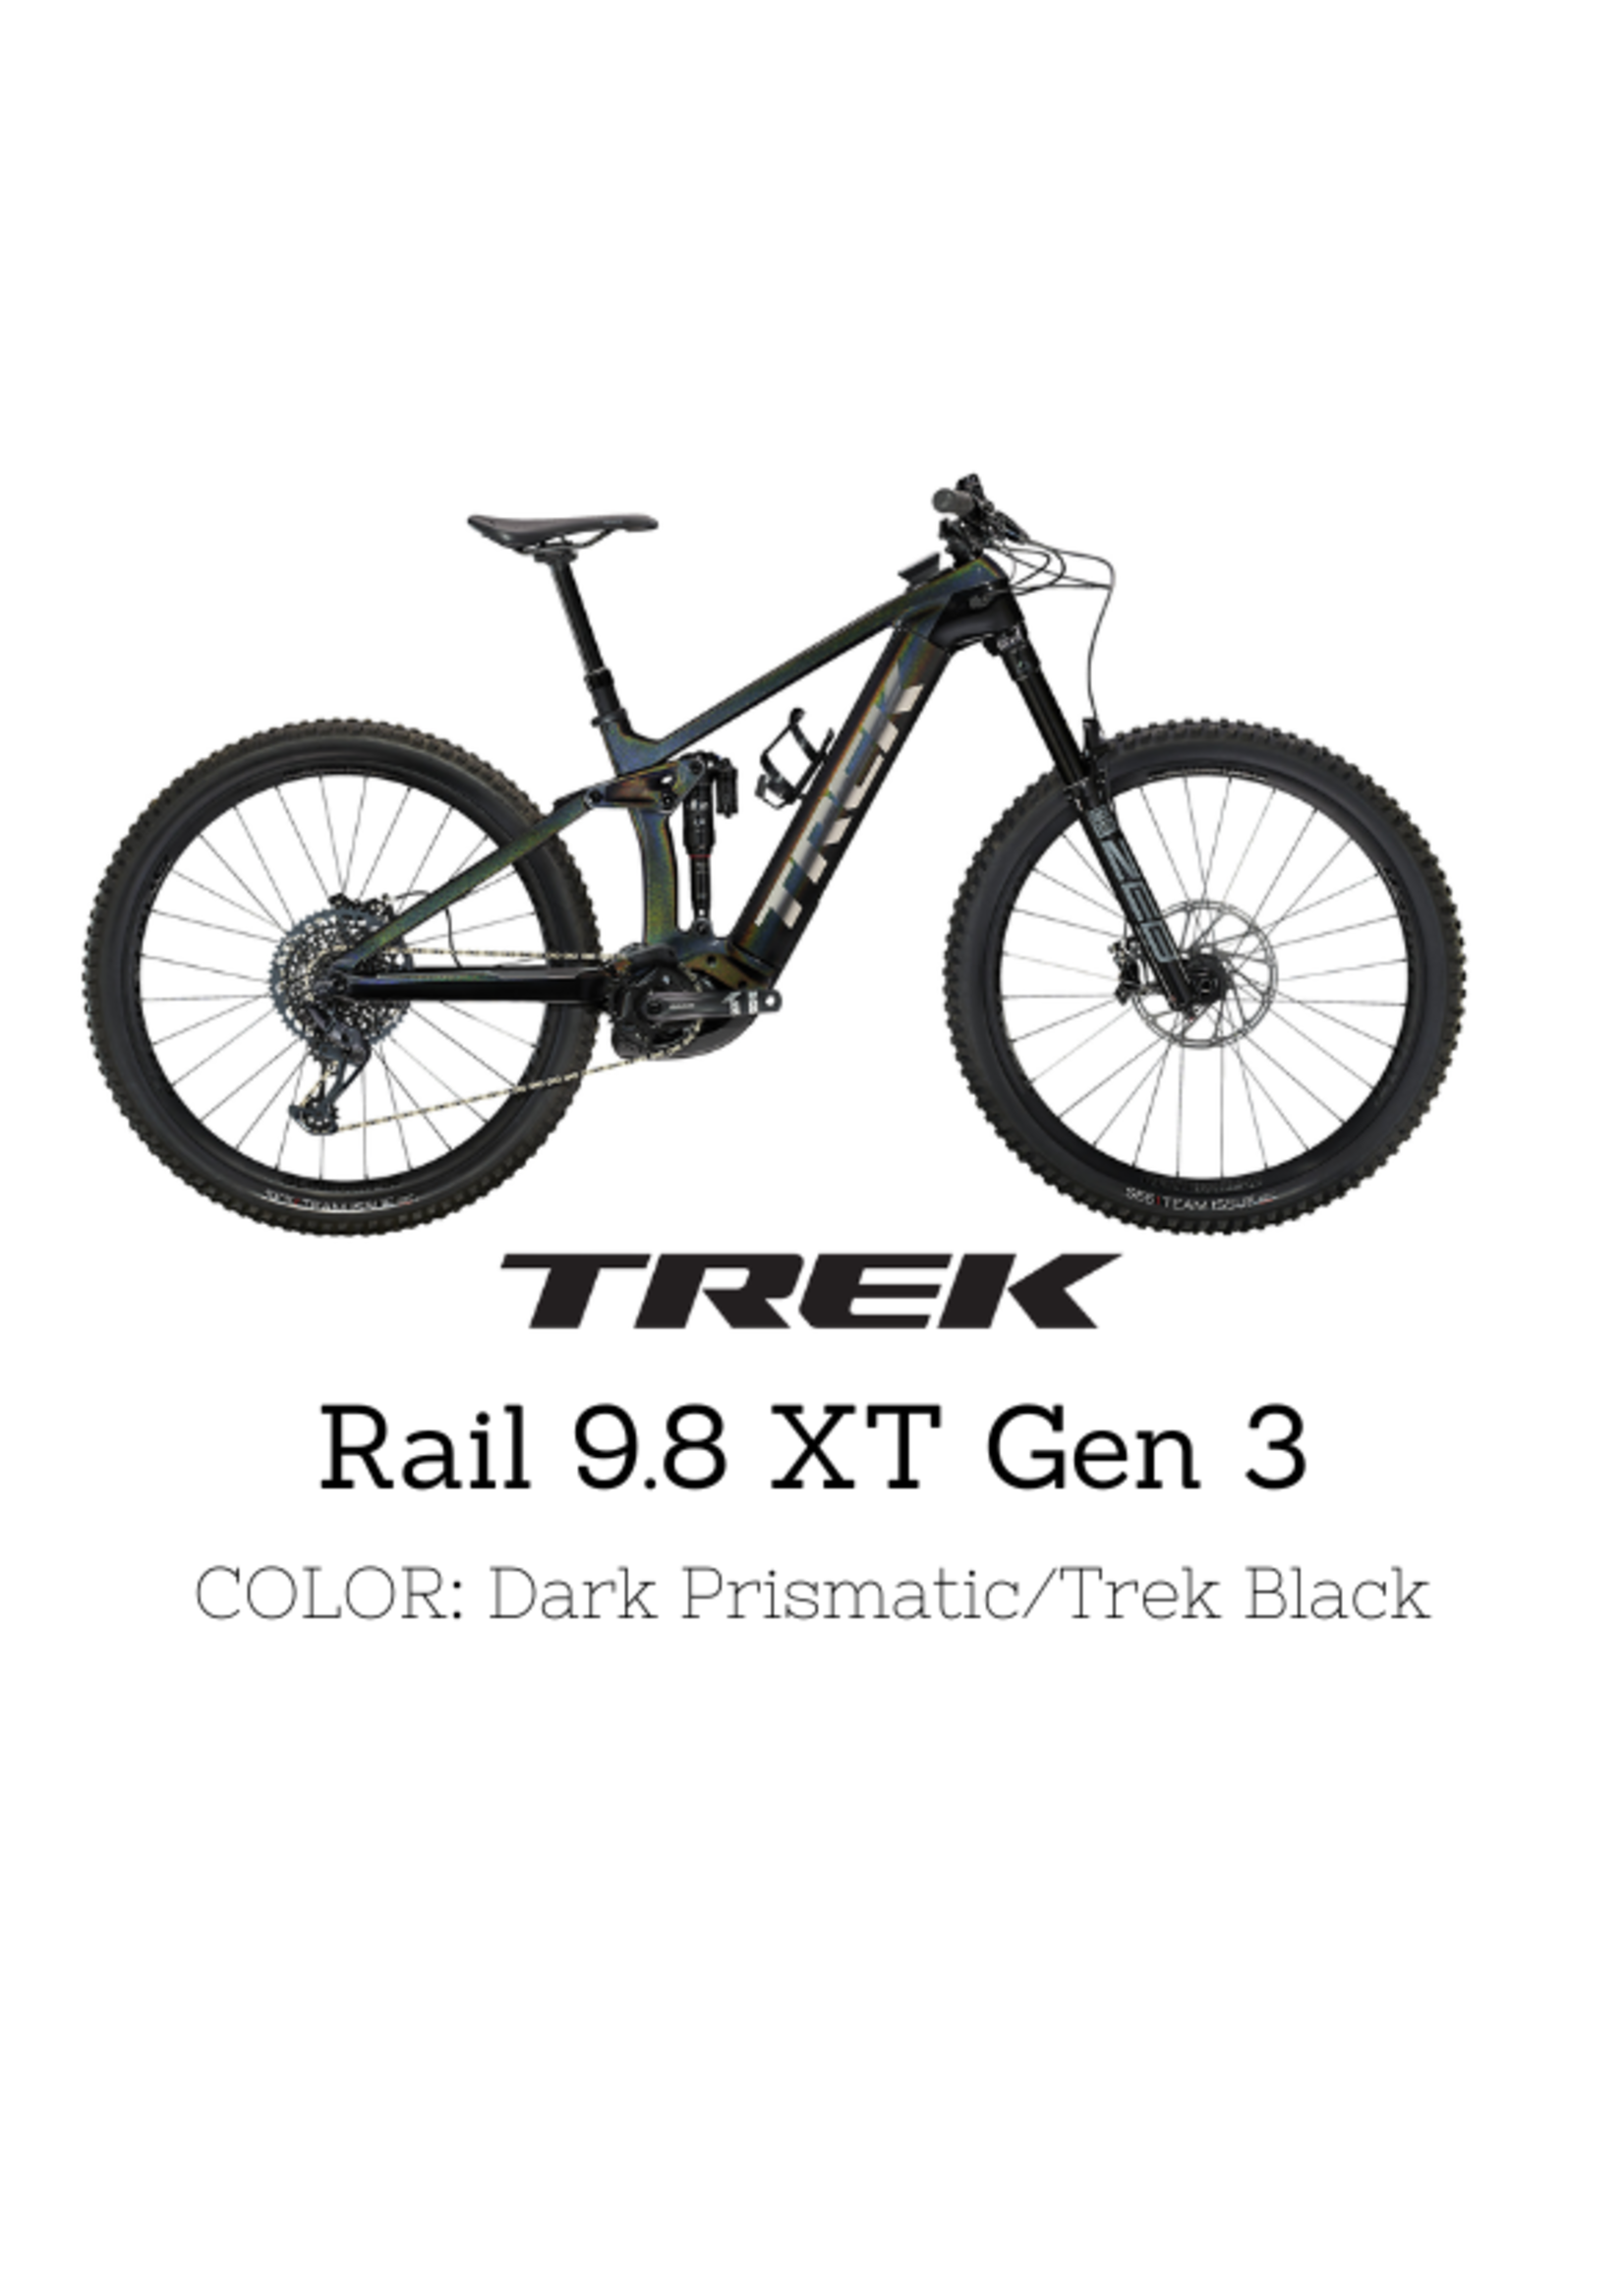 TREK Trek Rail 9.8 XT Gen 3